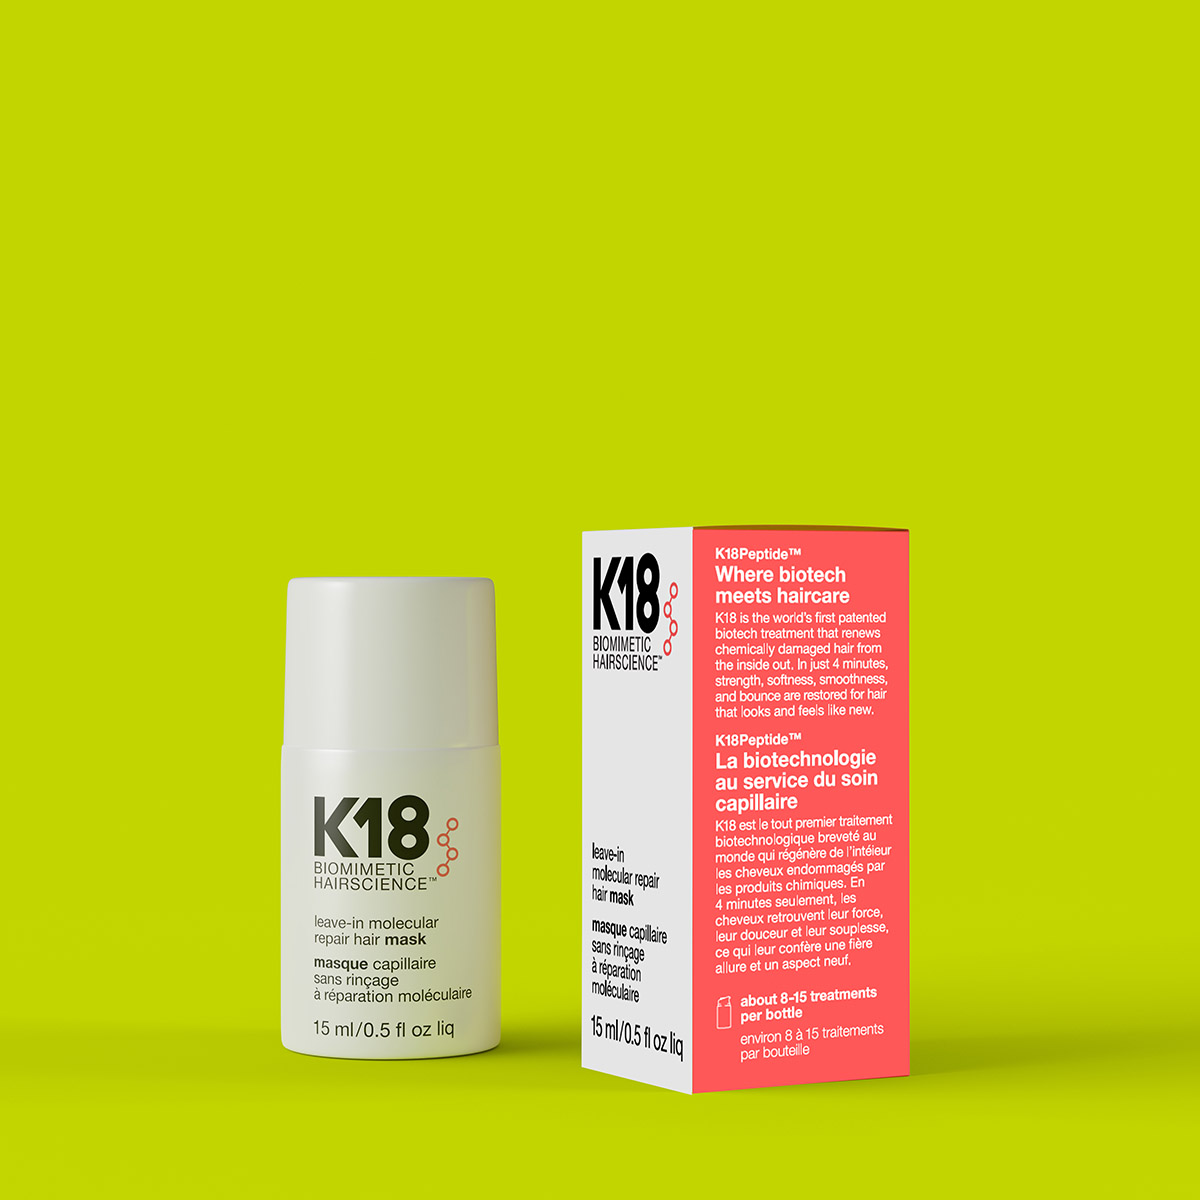 K18 Leave-in Molecular Repair Hair MASK 15ml - Hairsale.se